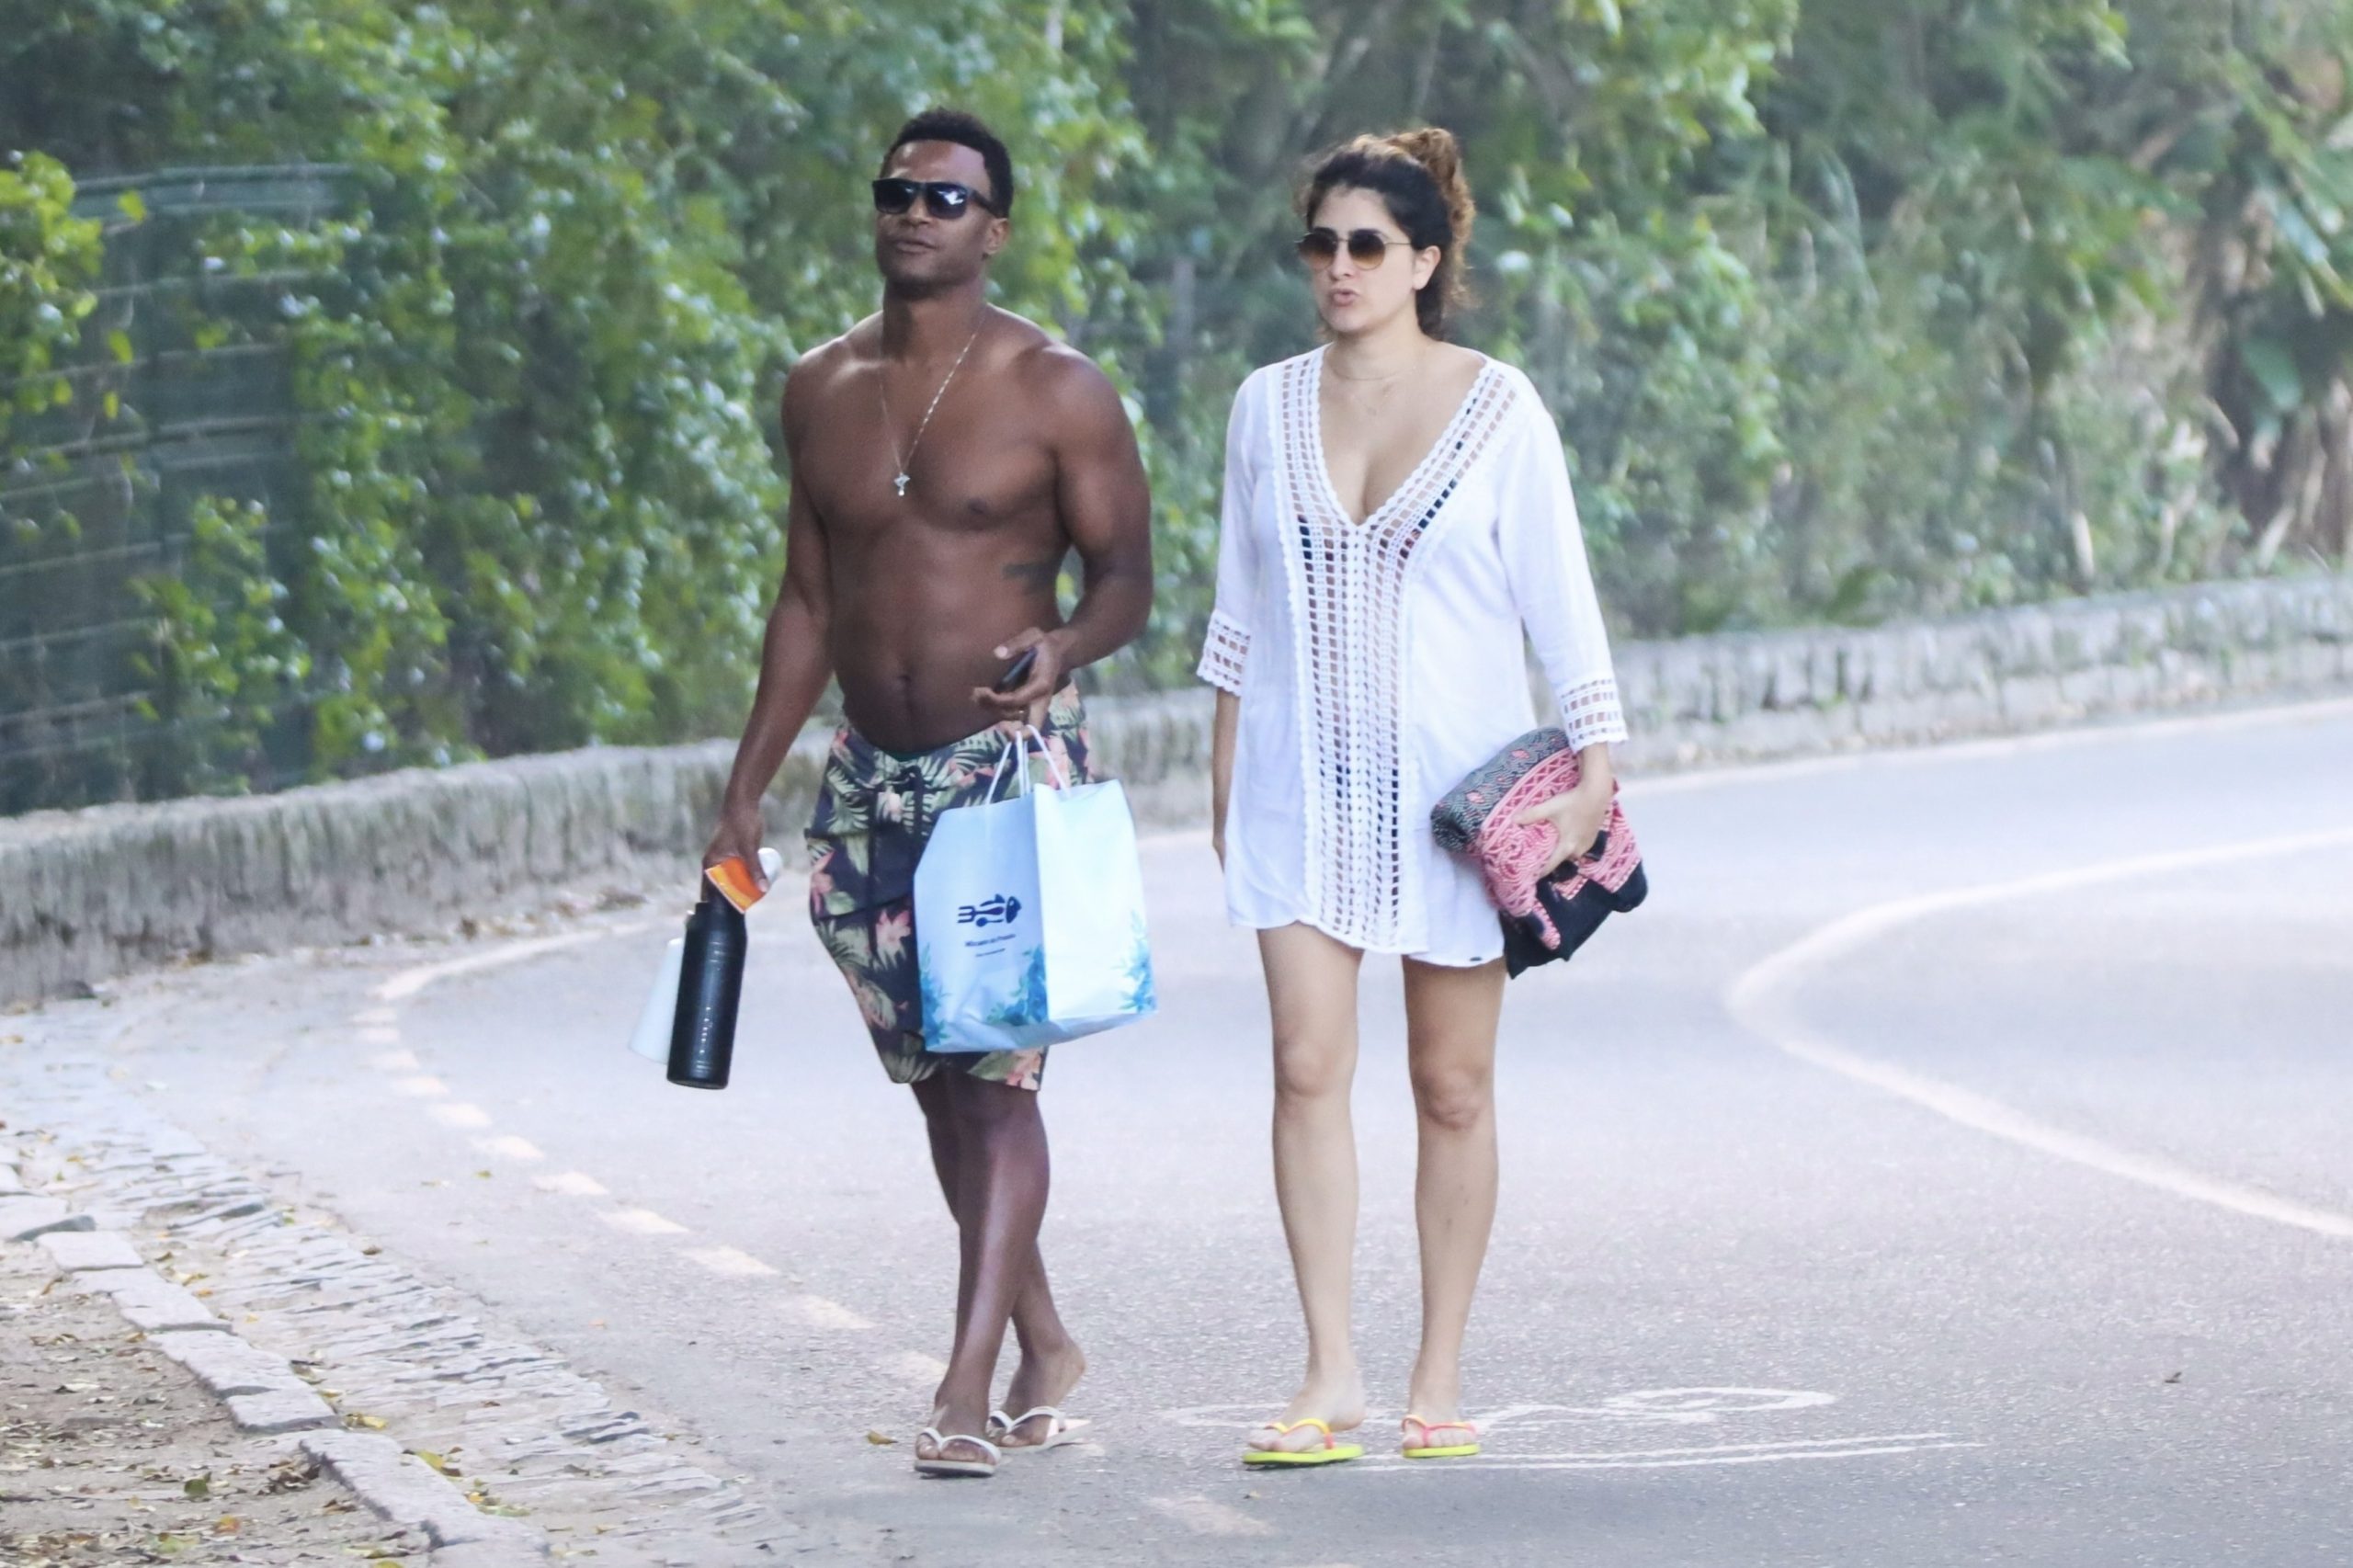 David Junior aproveita dia de praia com namorada no Rio